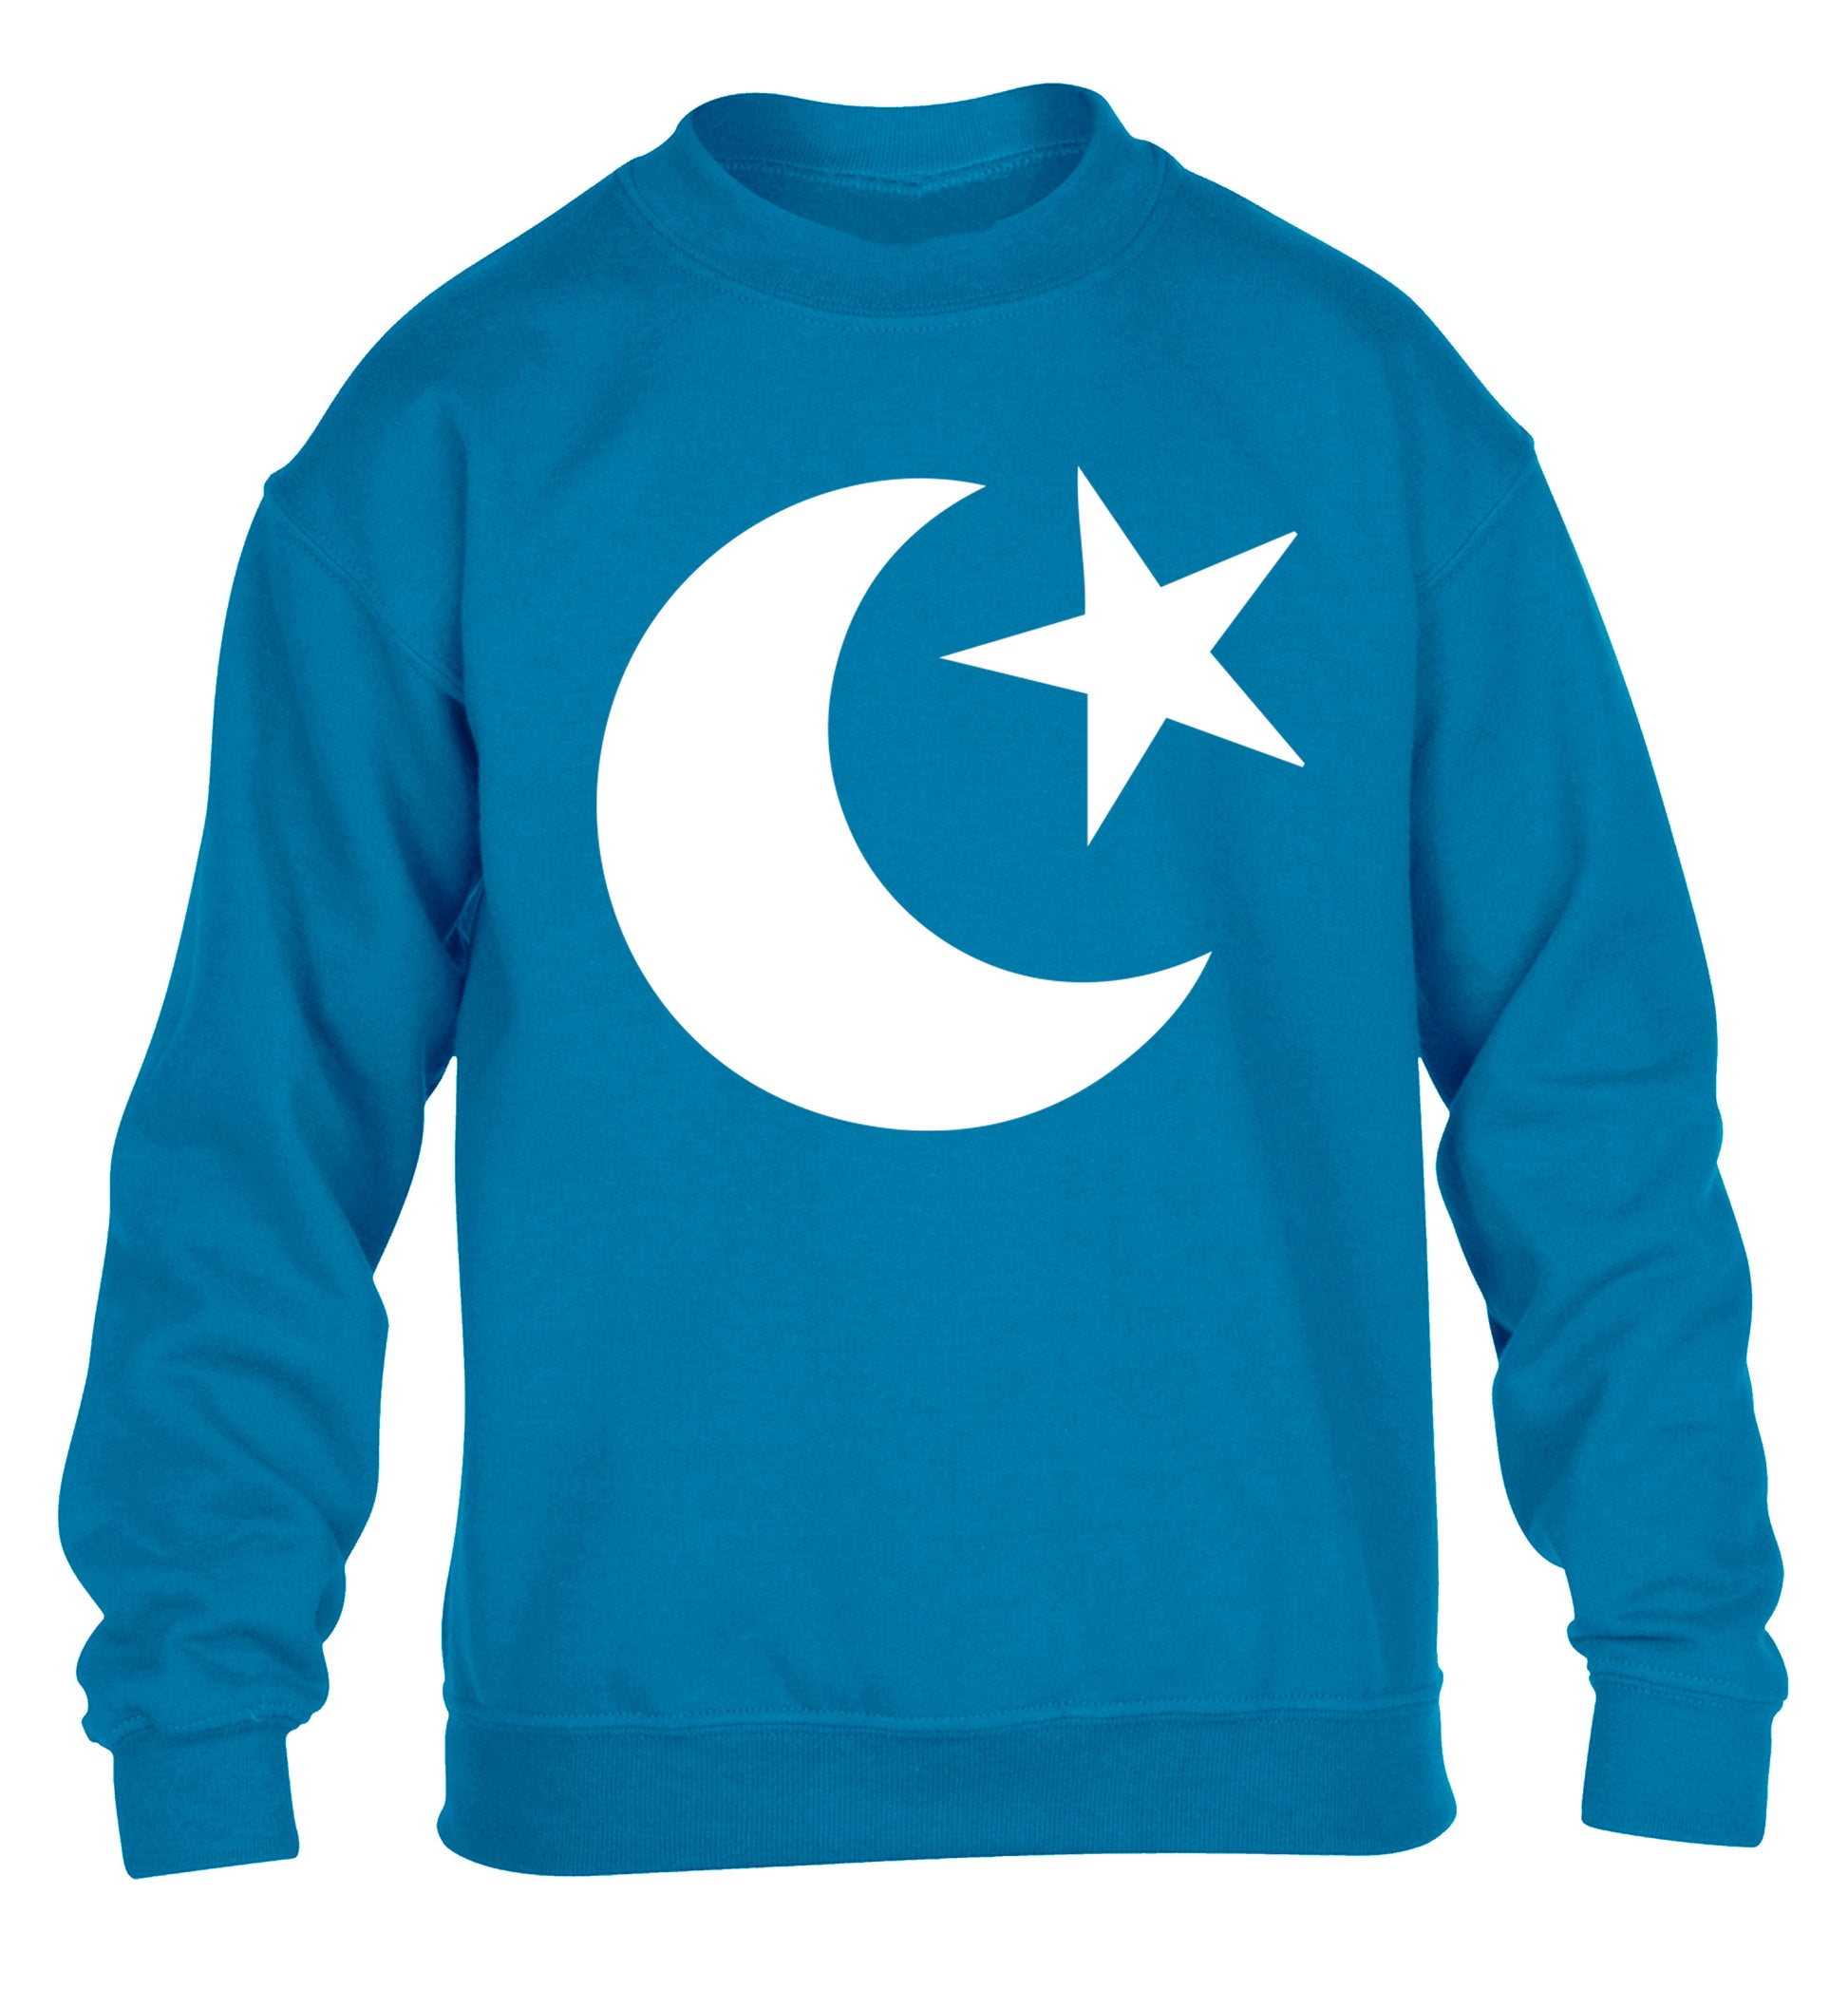 Eid symbol children's blue sweater 12-13 Years